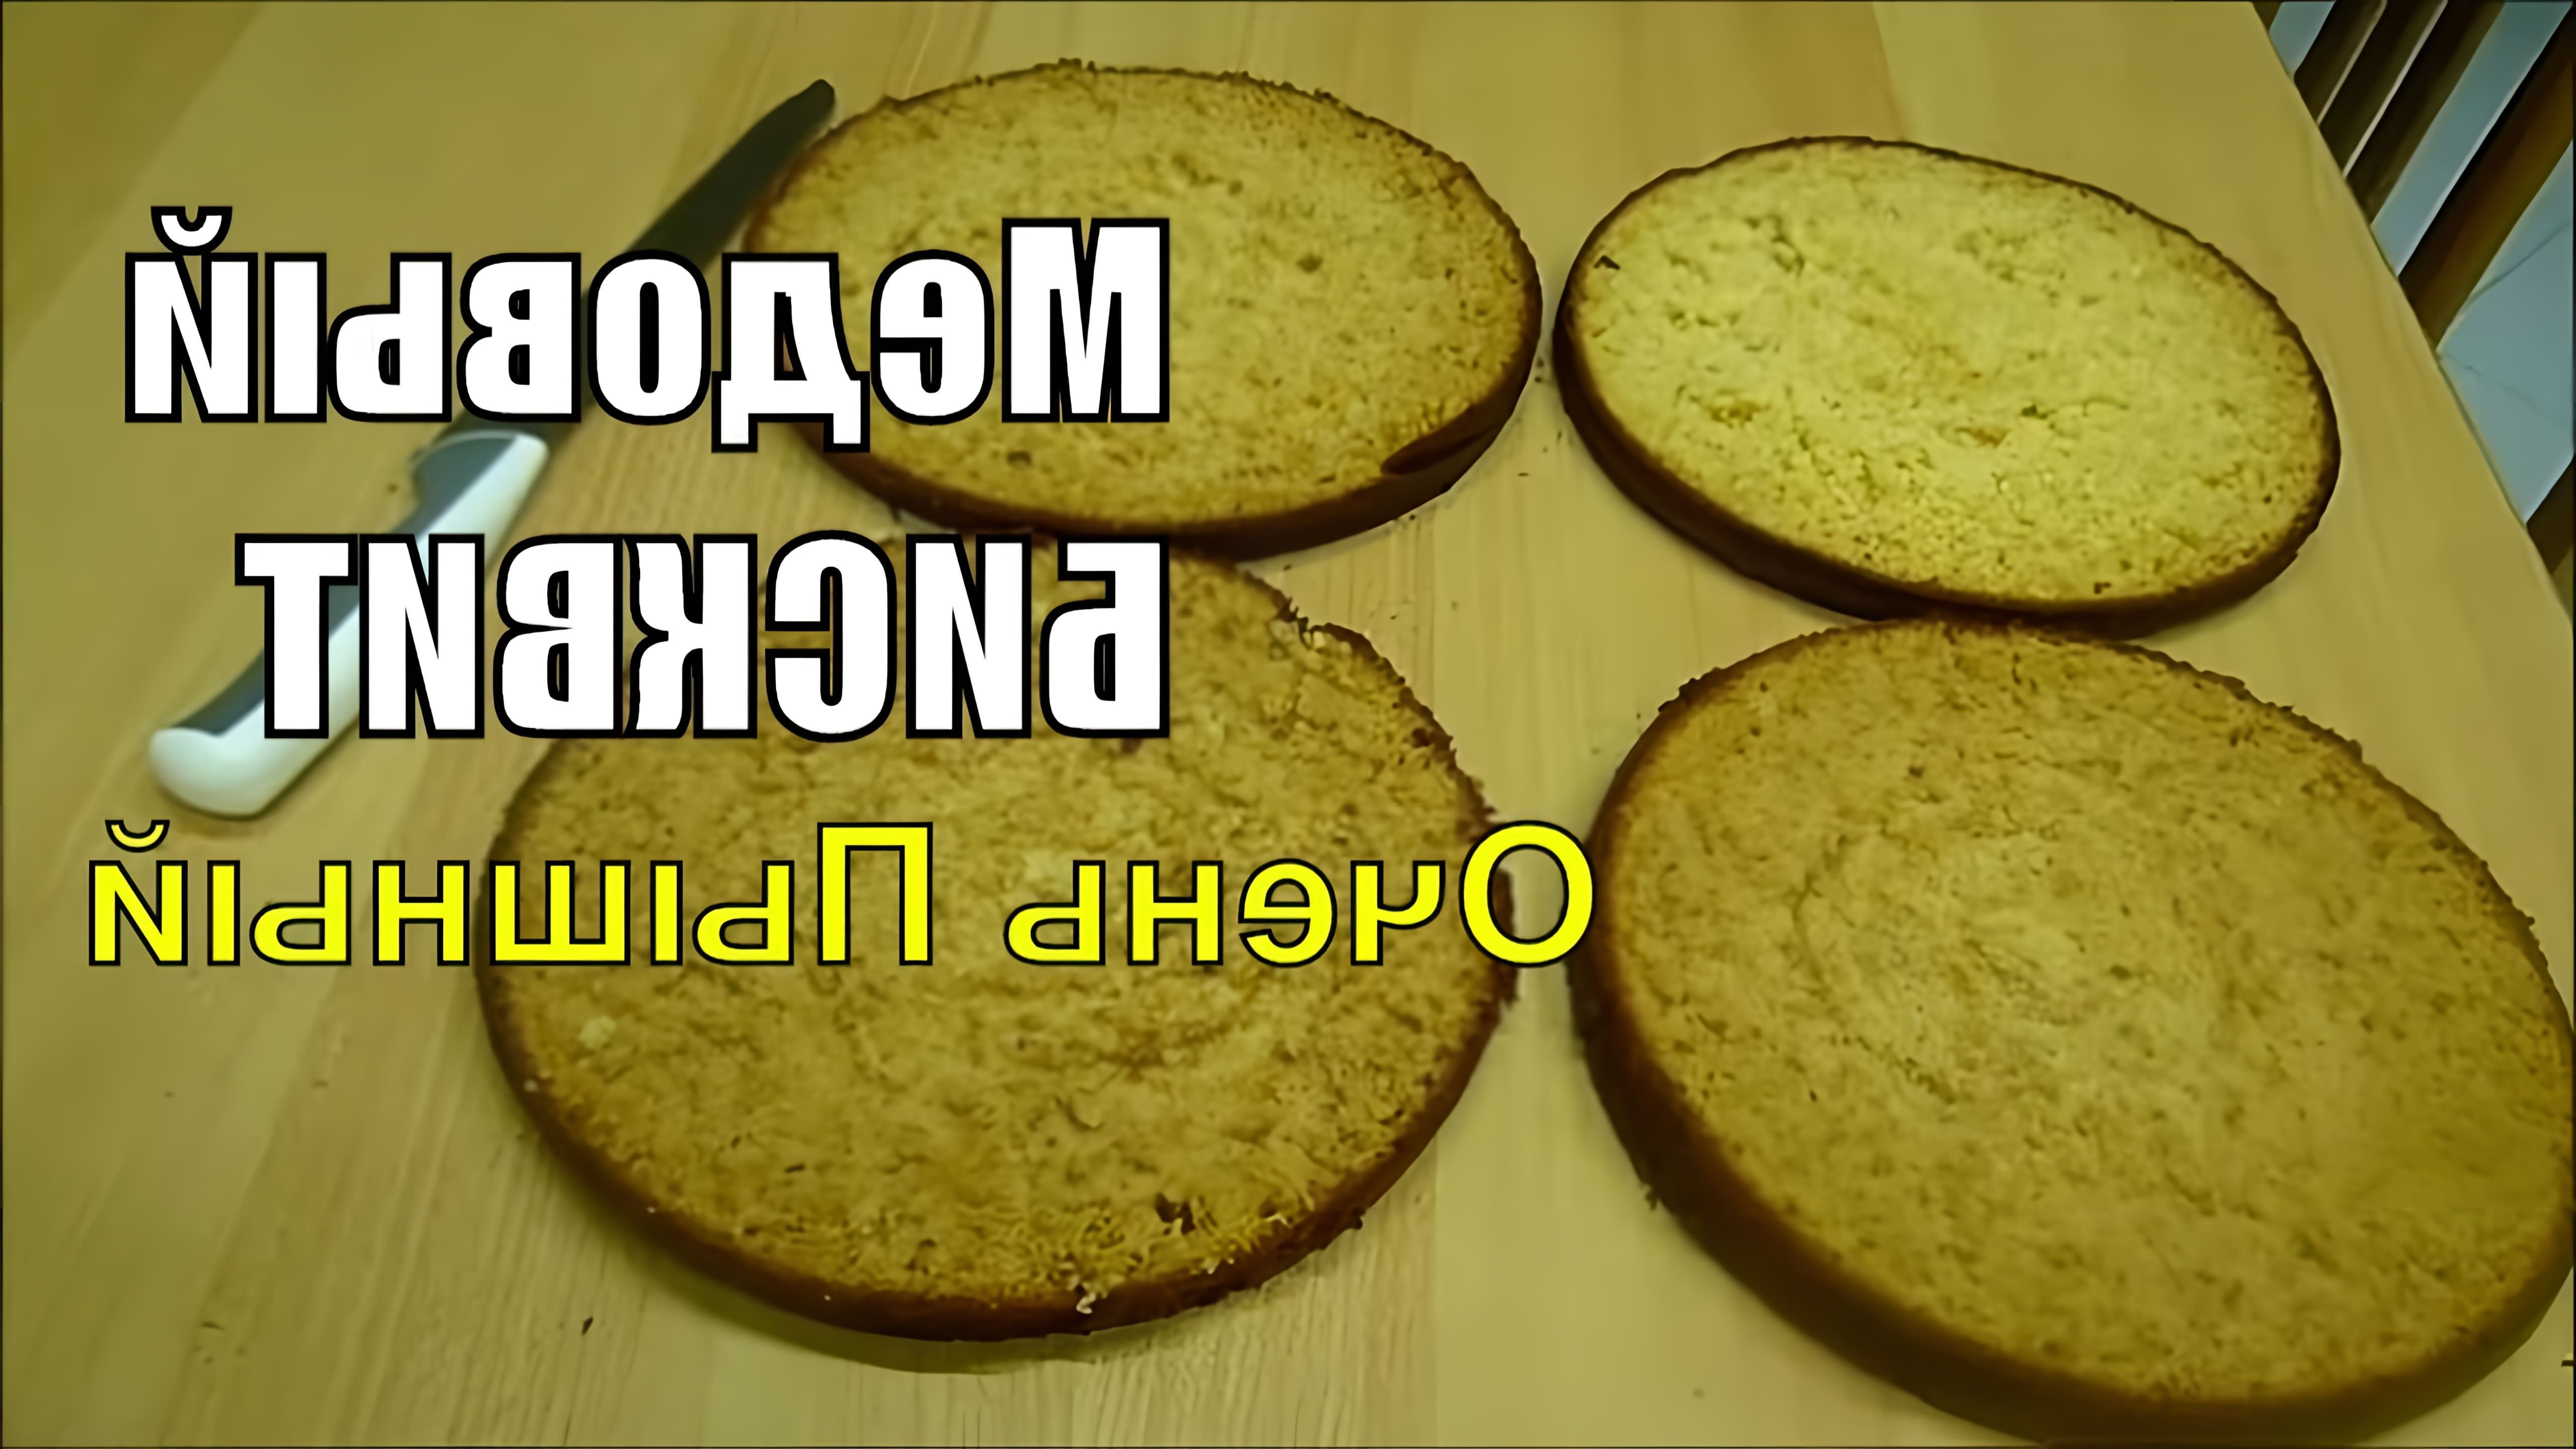 В этом видео демонстрируется рецепт приготовления очень пышного медового бисквита для торта из 4 коржей